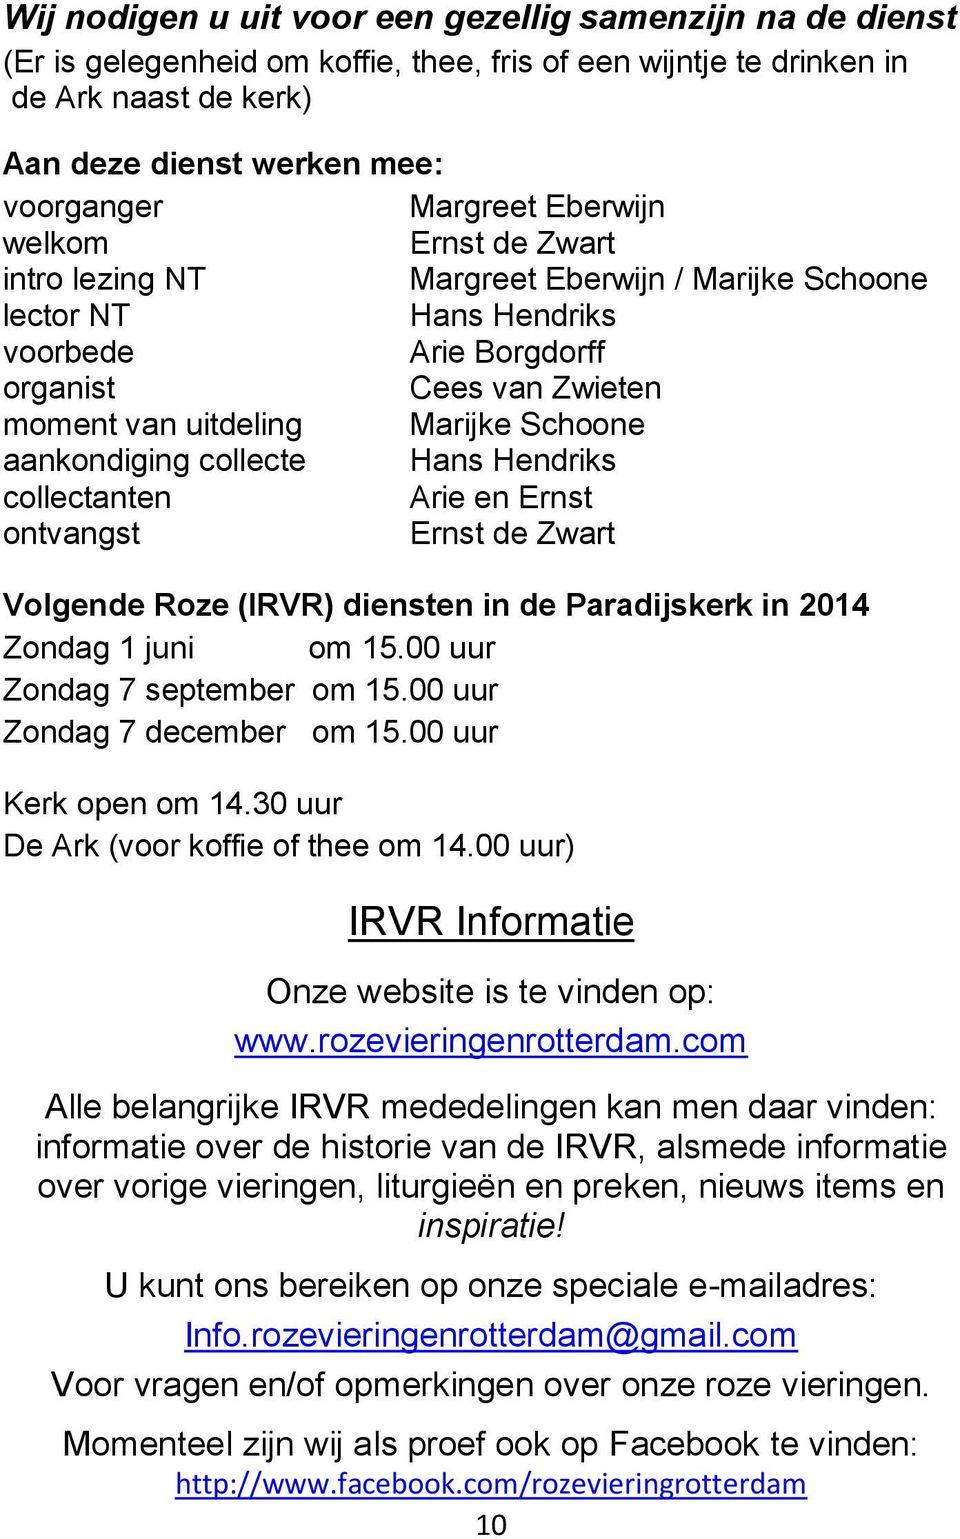 aankondiging collecte Hans Hendriks collectanten Arie en Ernst ontvangst Ernst de Zwart Volgende Roze (IRVR) diensten in de Paradijskerk in 2014 Zondag 1 juni om 15.00 uur Zondag 7 september om 15.